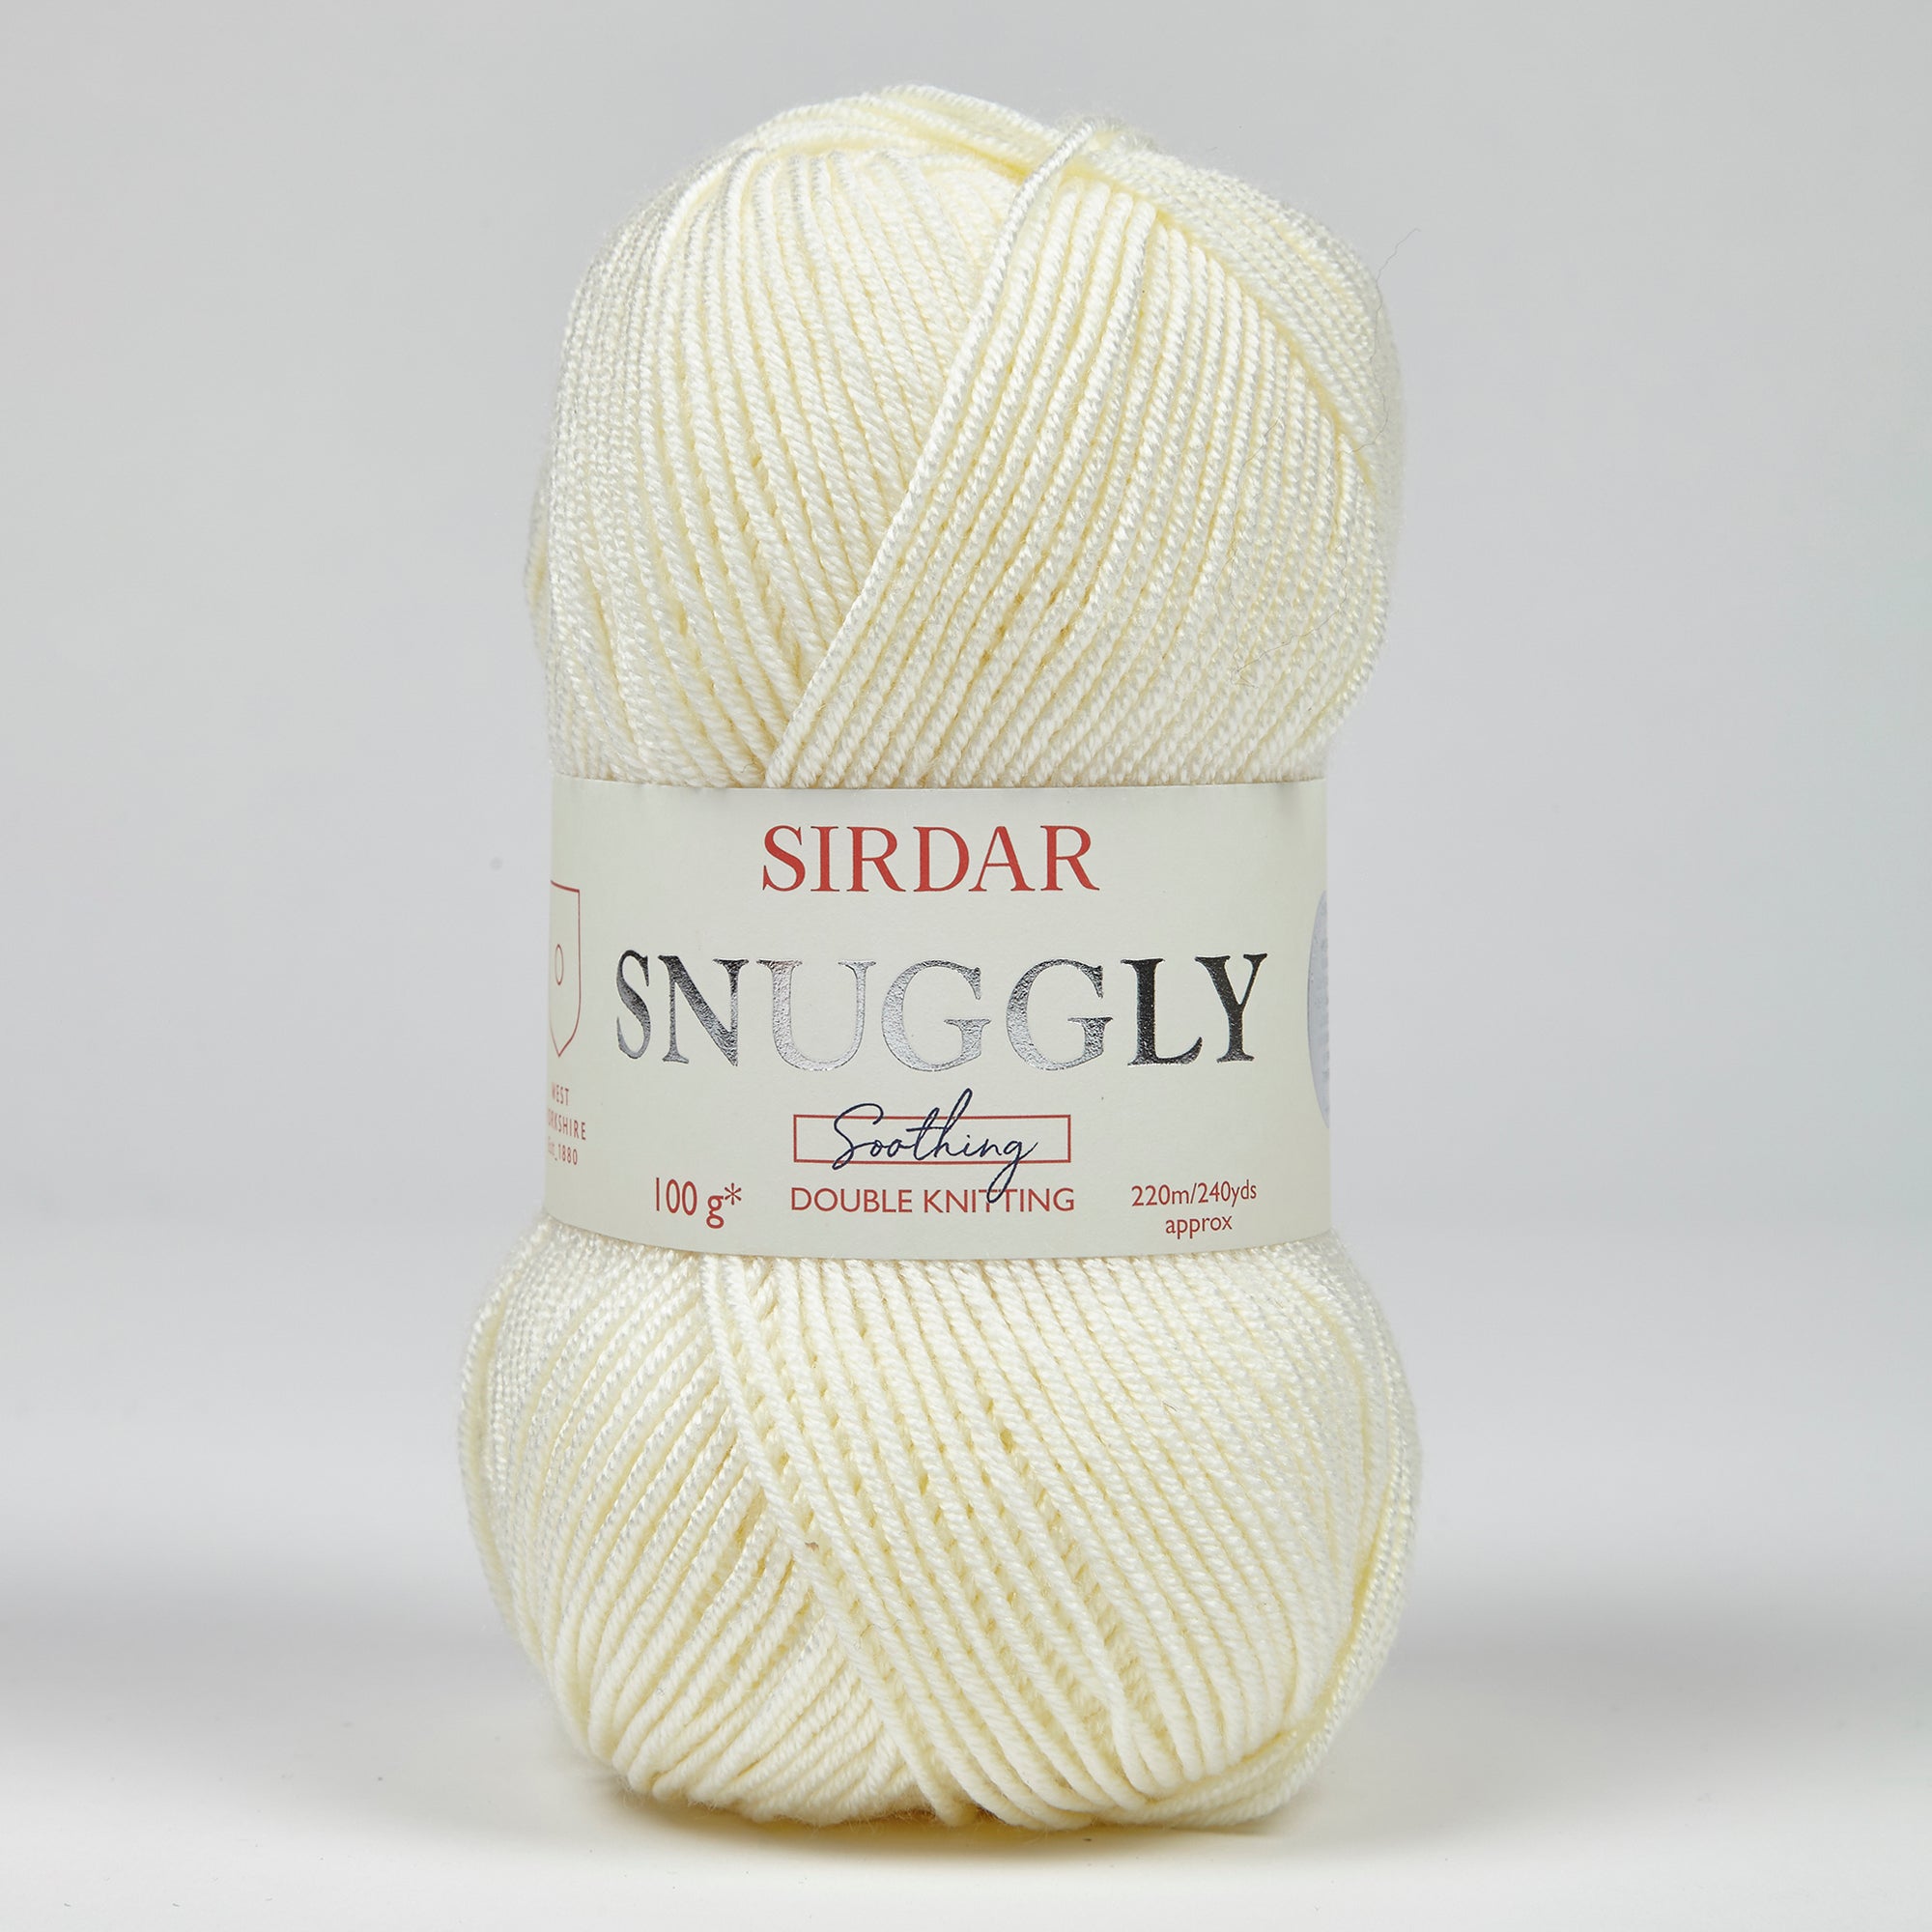 Sirdar Snuggly Soothing DK Cream Yarn